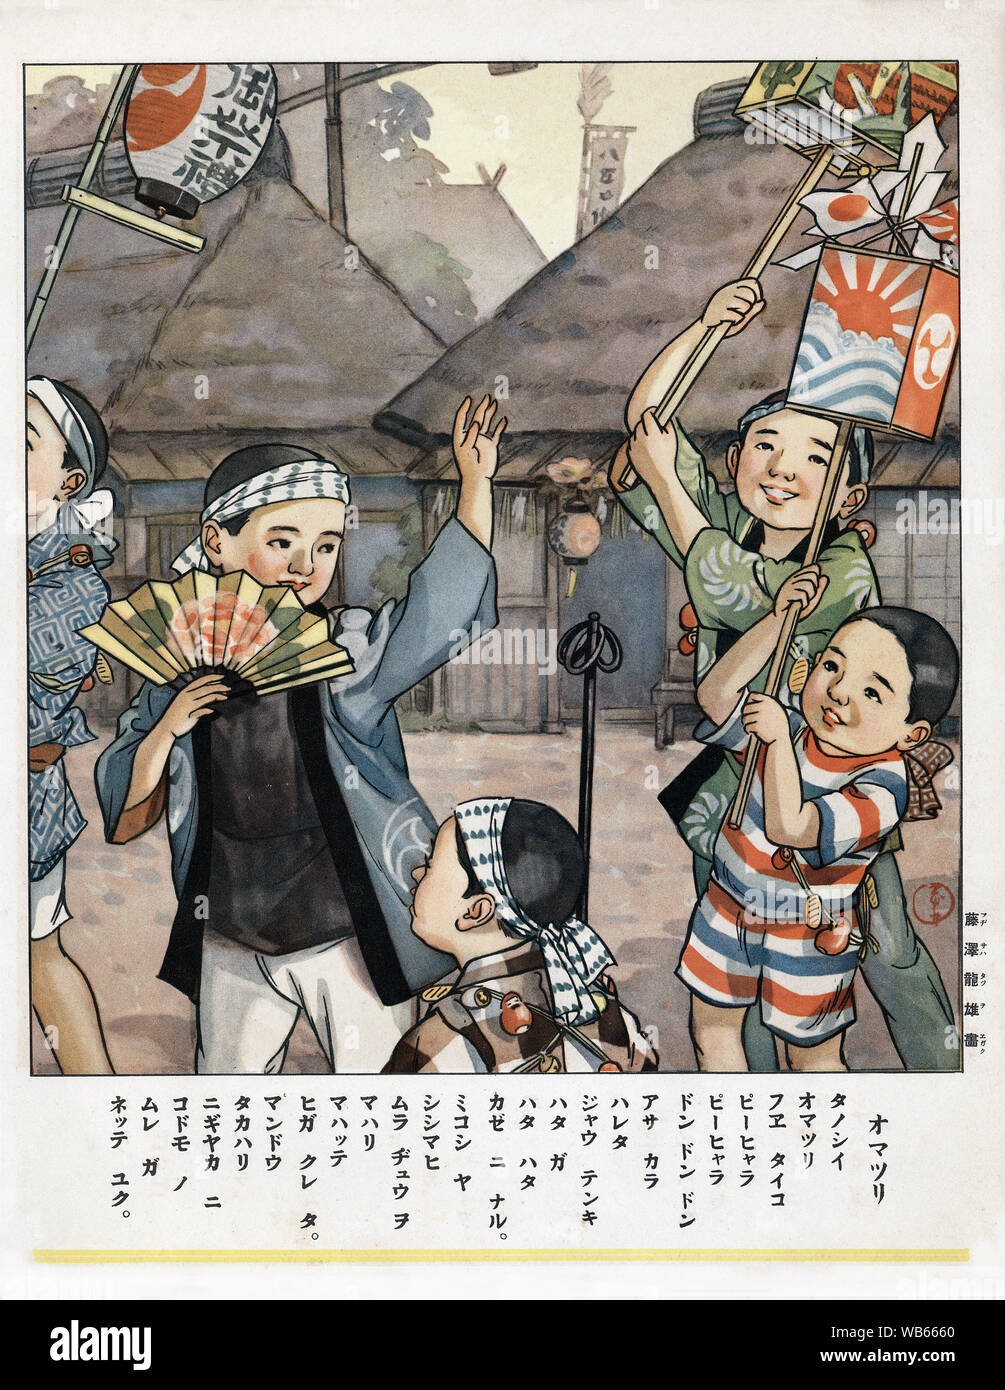 [ 1930 Giappone - Illustrazione di bambini giapponesi al Festival ] - una stampa con il versetto per bambini di scuola elementare che mostra un matsuri (festival religioso). Xx secolo libro vintage illustrazione. Foto Stock